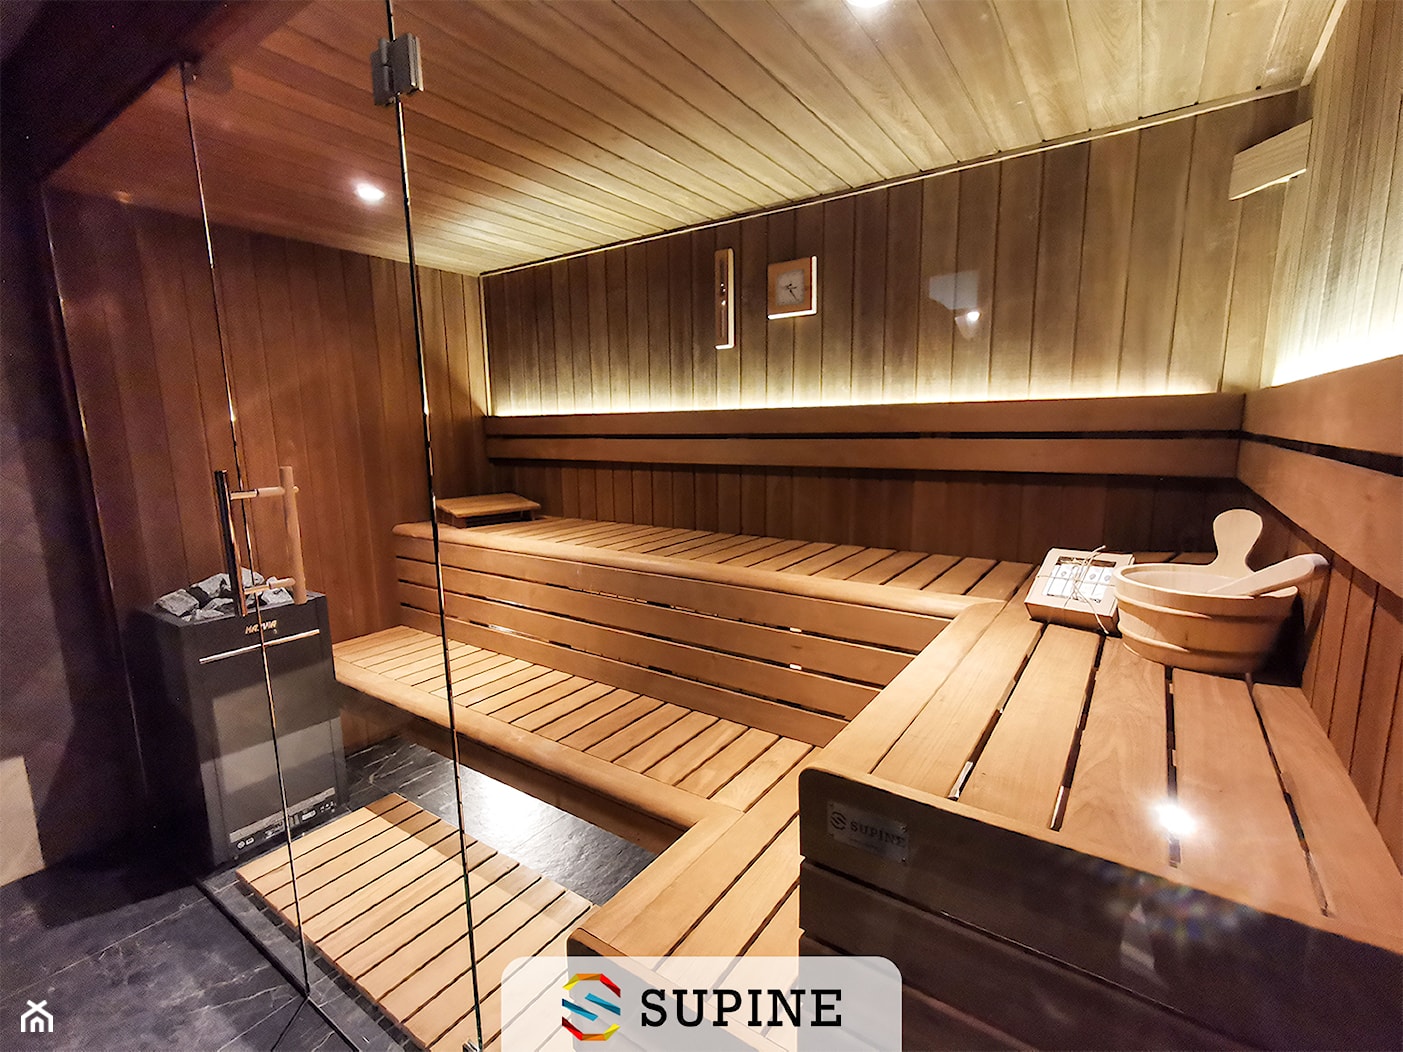 Sauna domowa w drewnie z lipy termowanej - Wnętrza publiczne, styl skandynawski - zdjęcie od Supine - Homebook